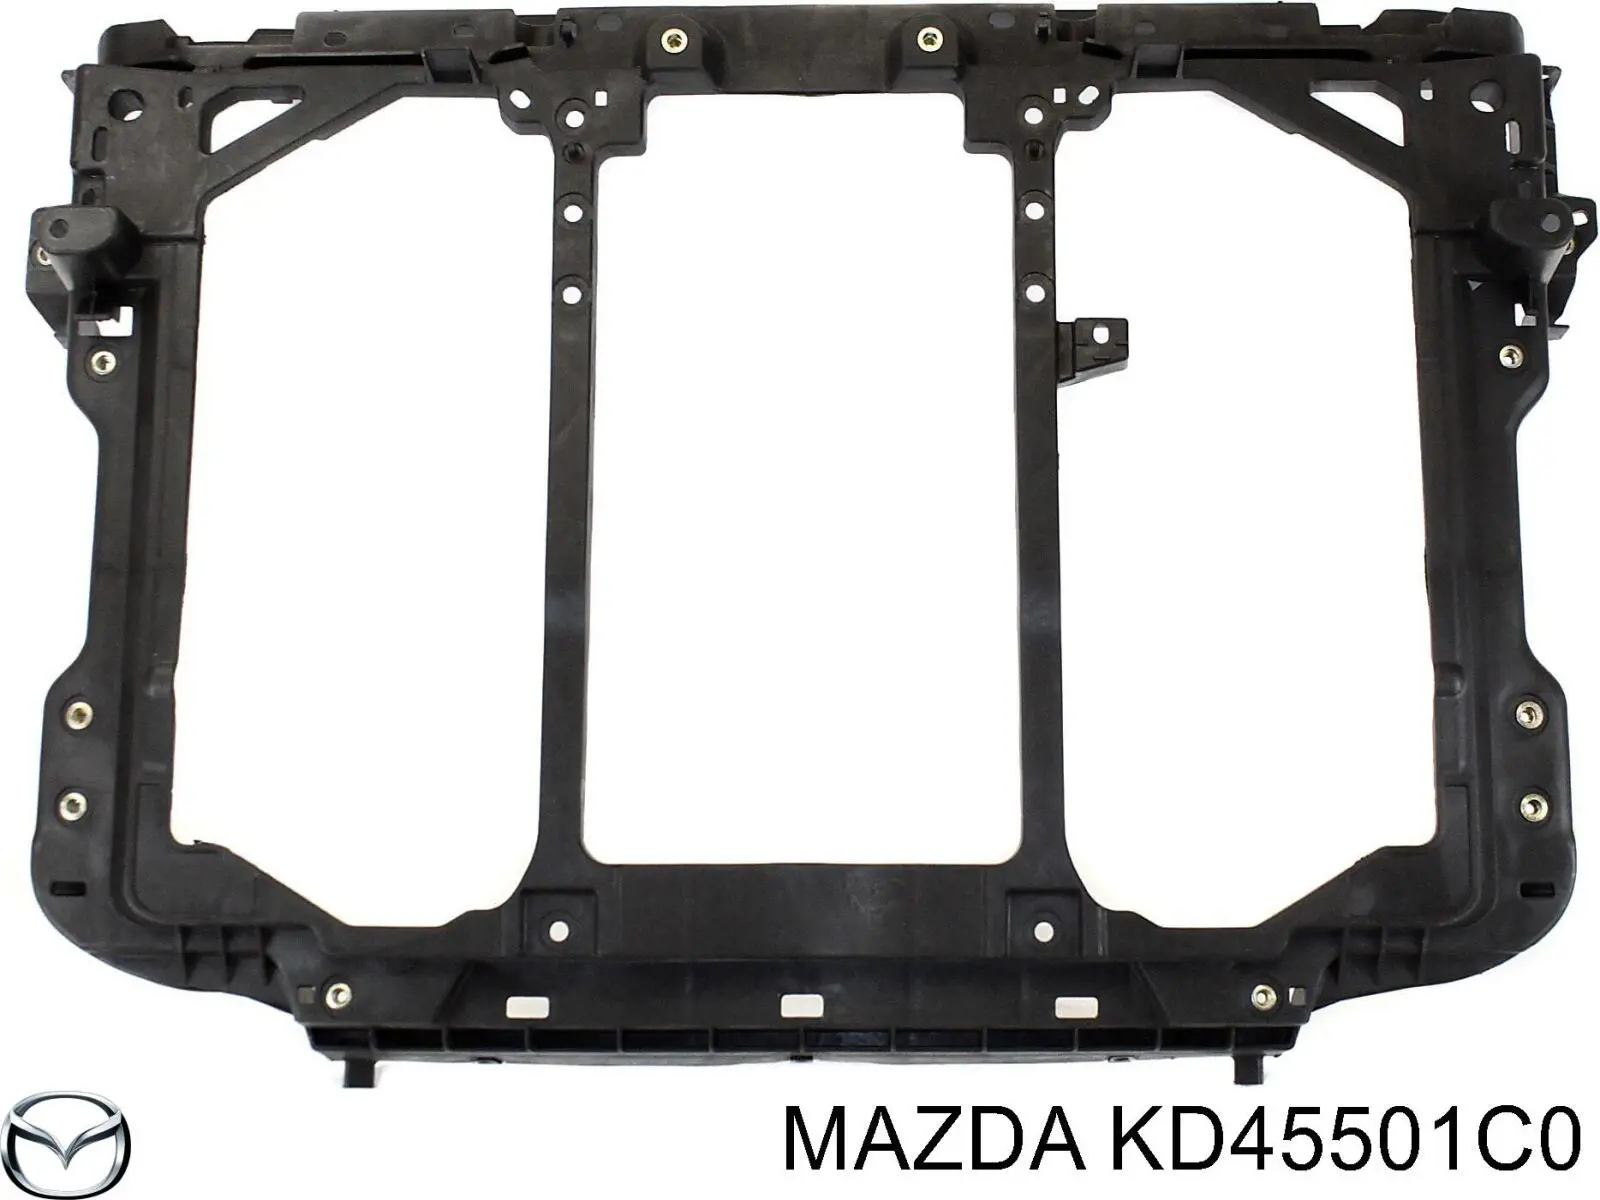 KD45501C0 Mazda cubierta de soporte para difusor de radiador, superior